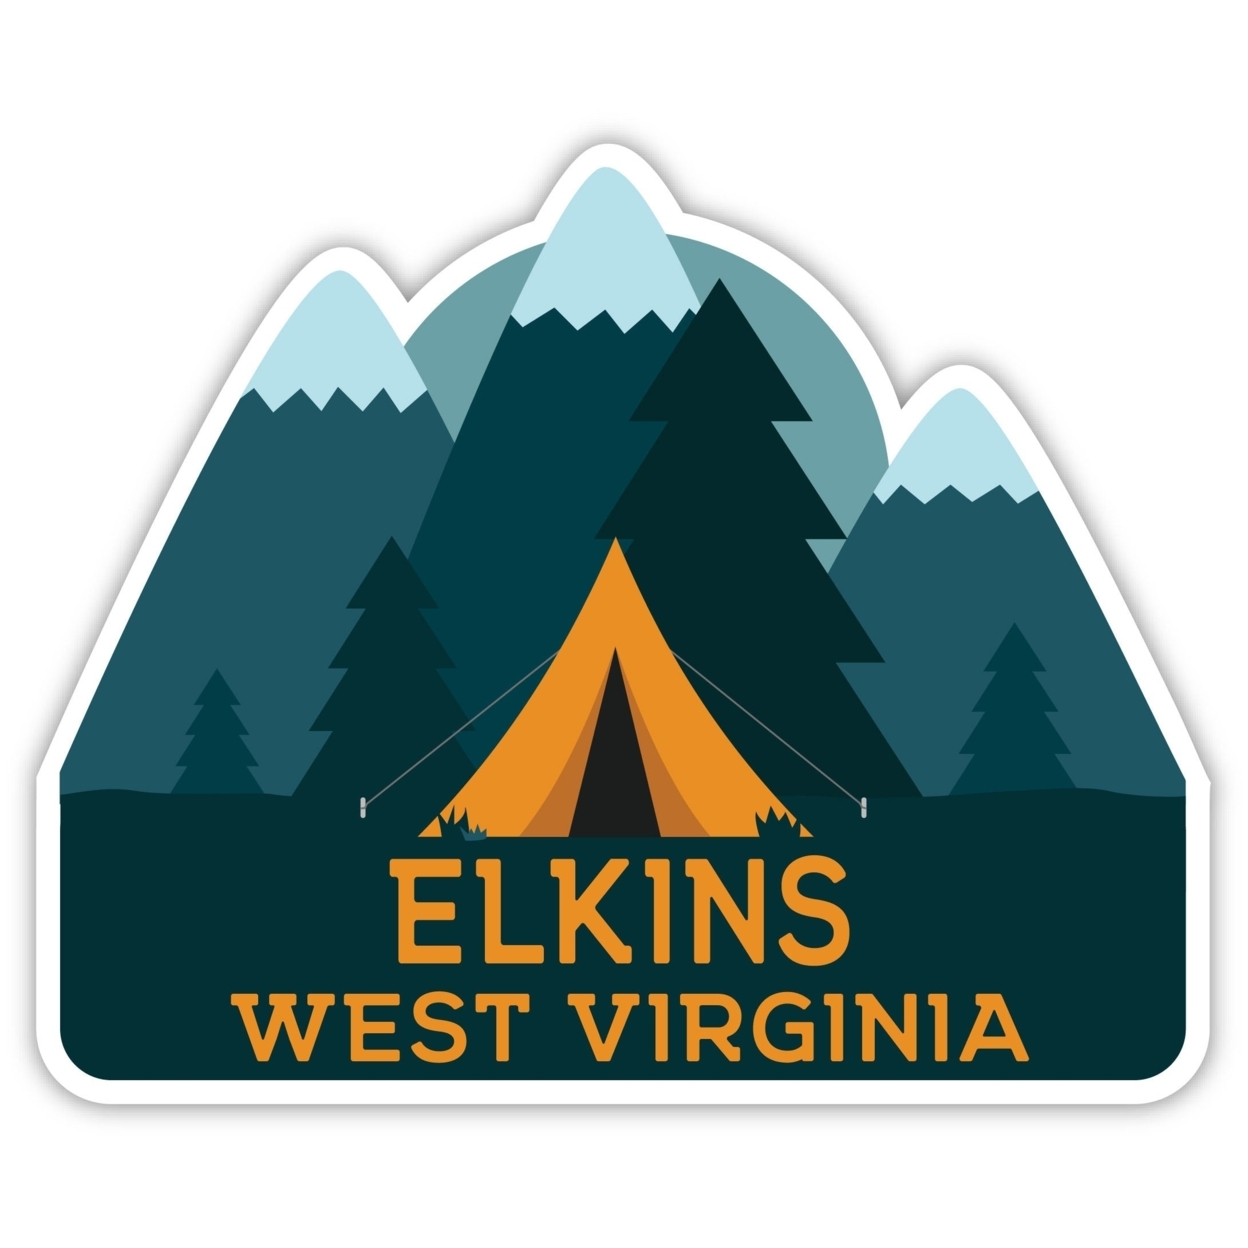 Elkins West Virginia Souvenir Decorative Stickers (Choose Theme And Size) - Single Unit, 2-Inch, Tent